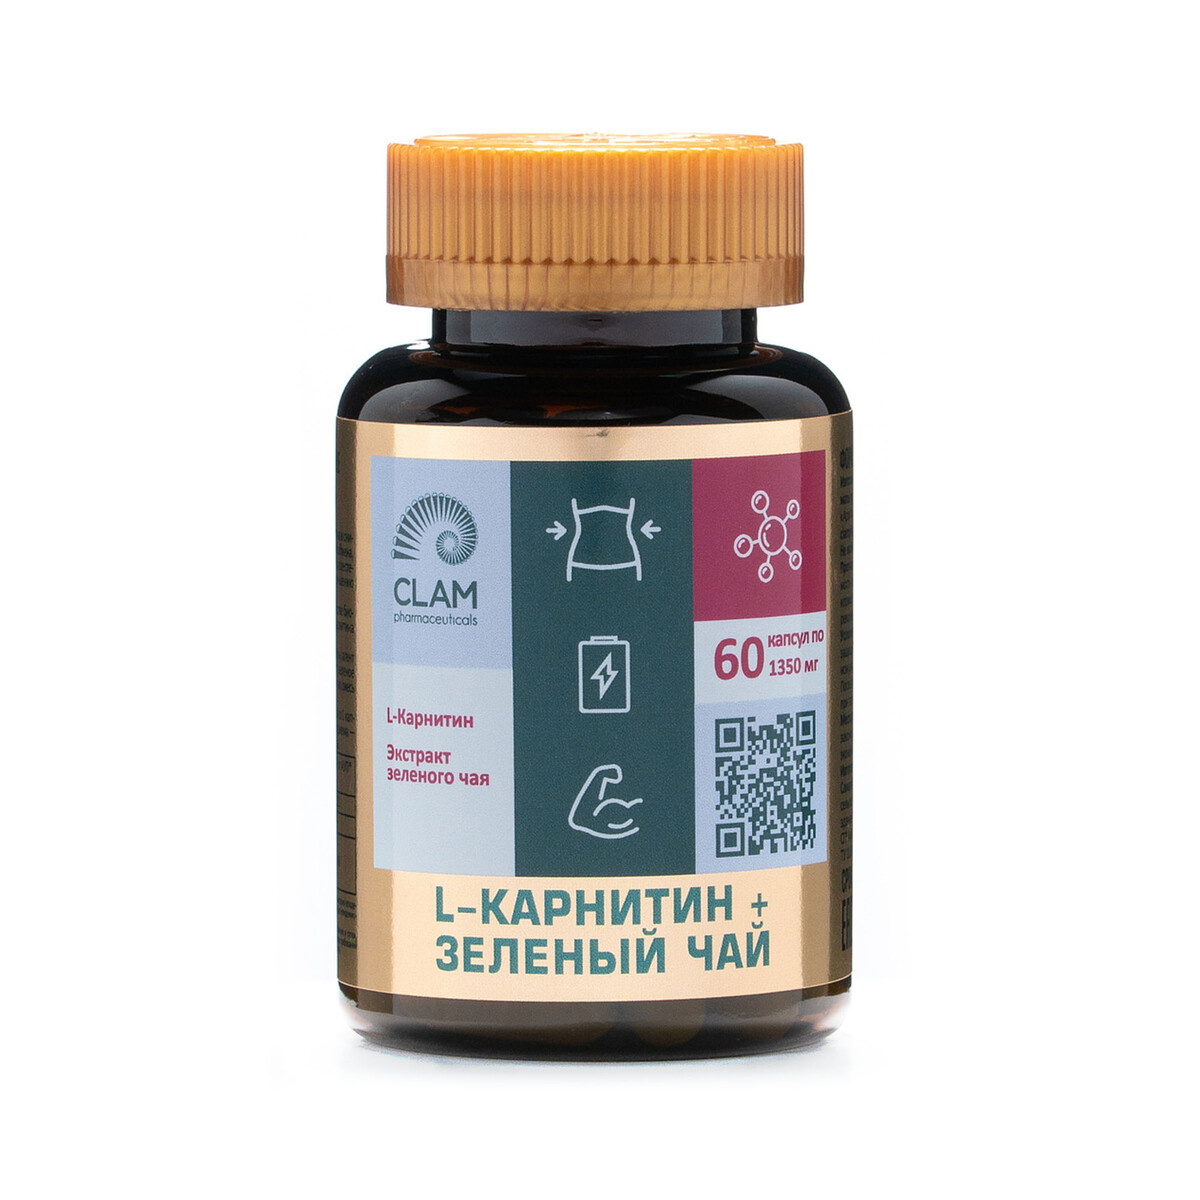 L-карнитин + зеленый чай - нормализация веса - для похудения и повышения энергии - 60 капсул l карнитин зеленый чай нормализация веса для похудения и повышения энергии 60 капсул